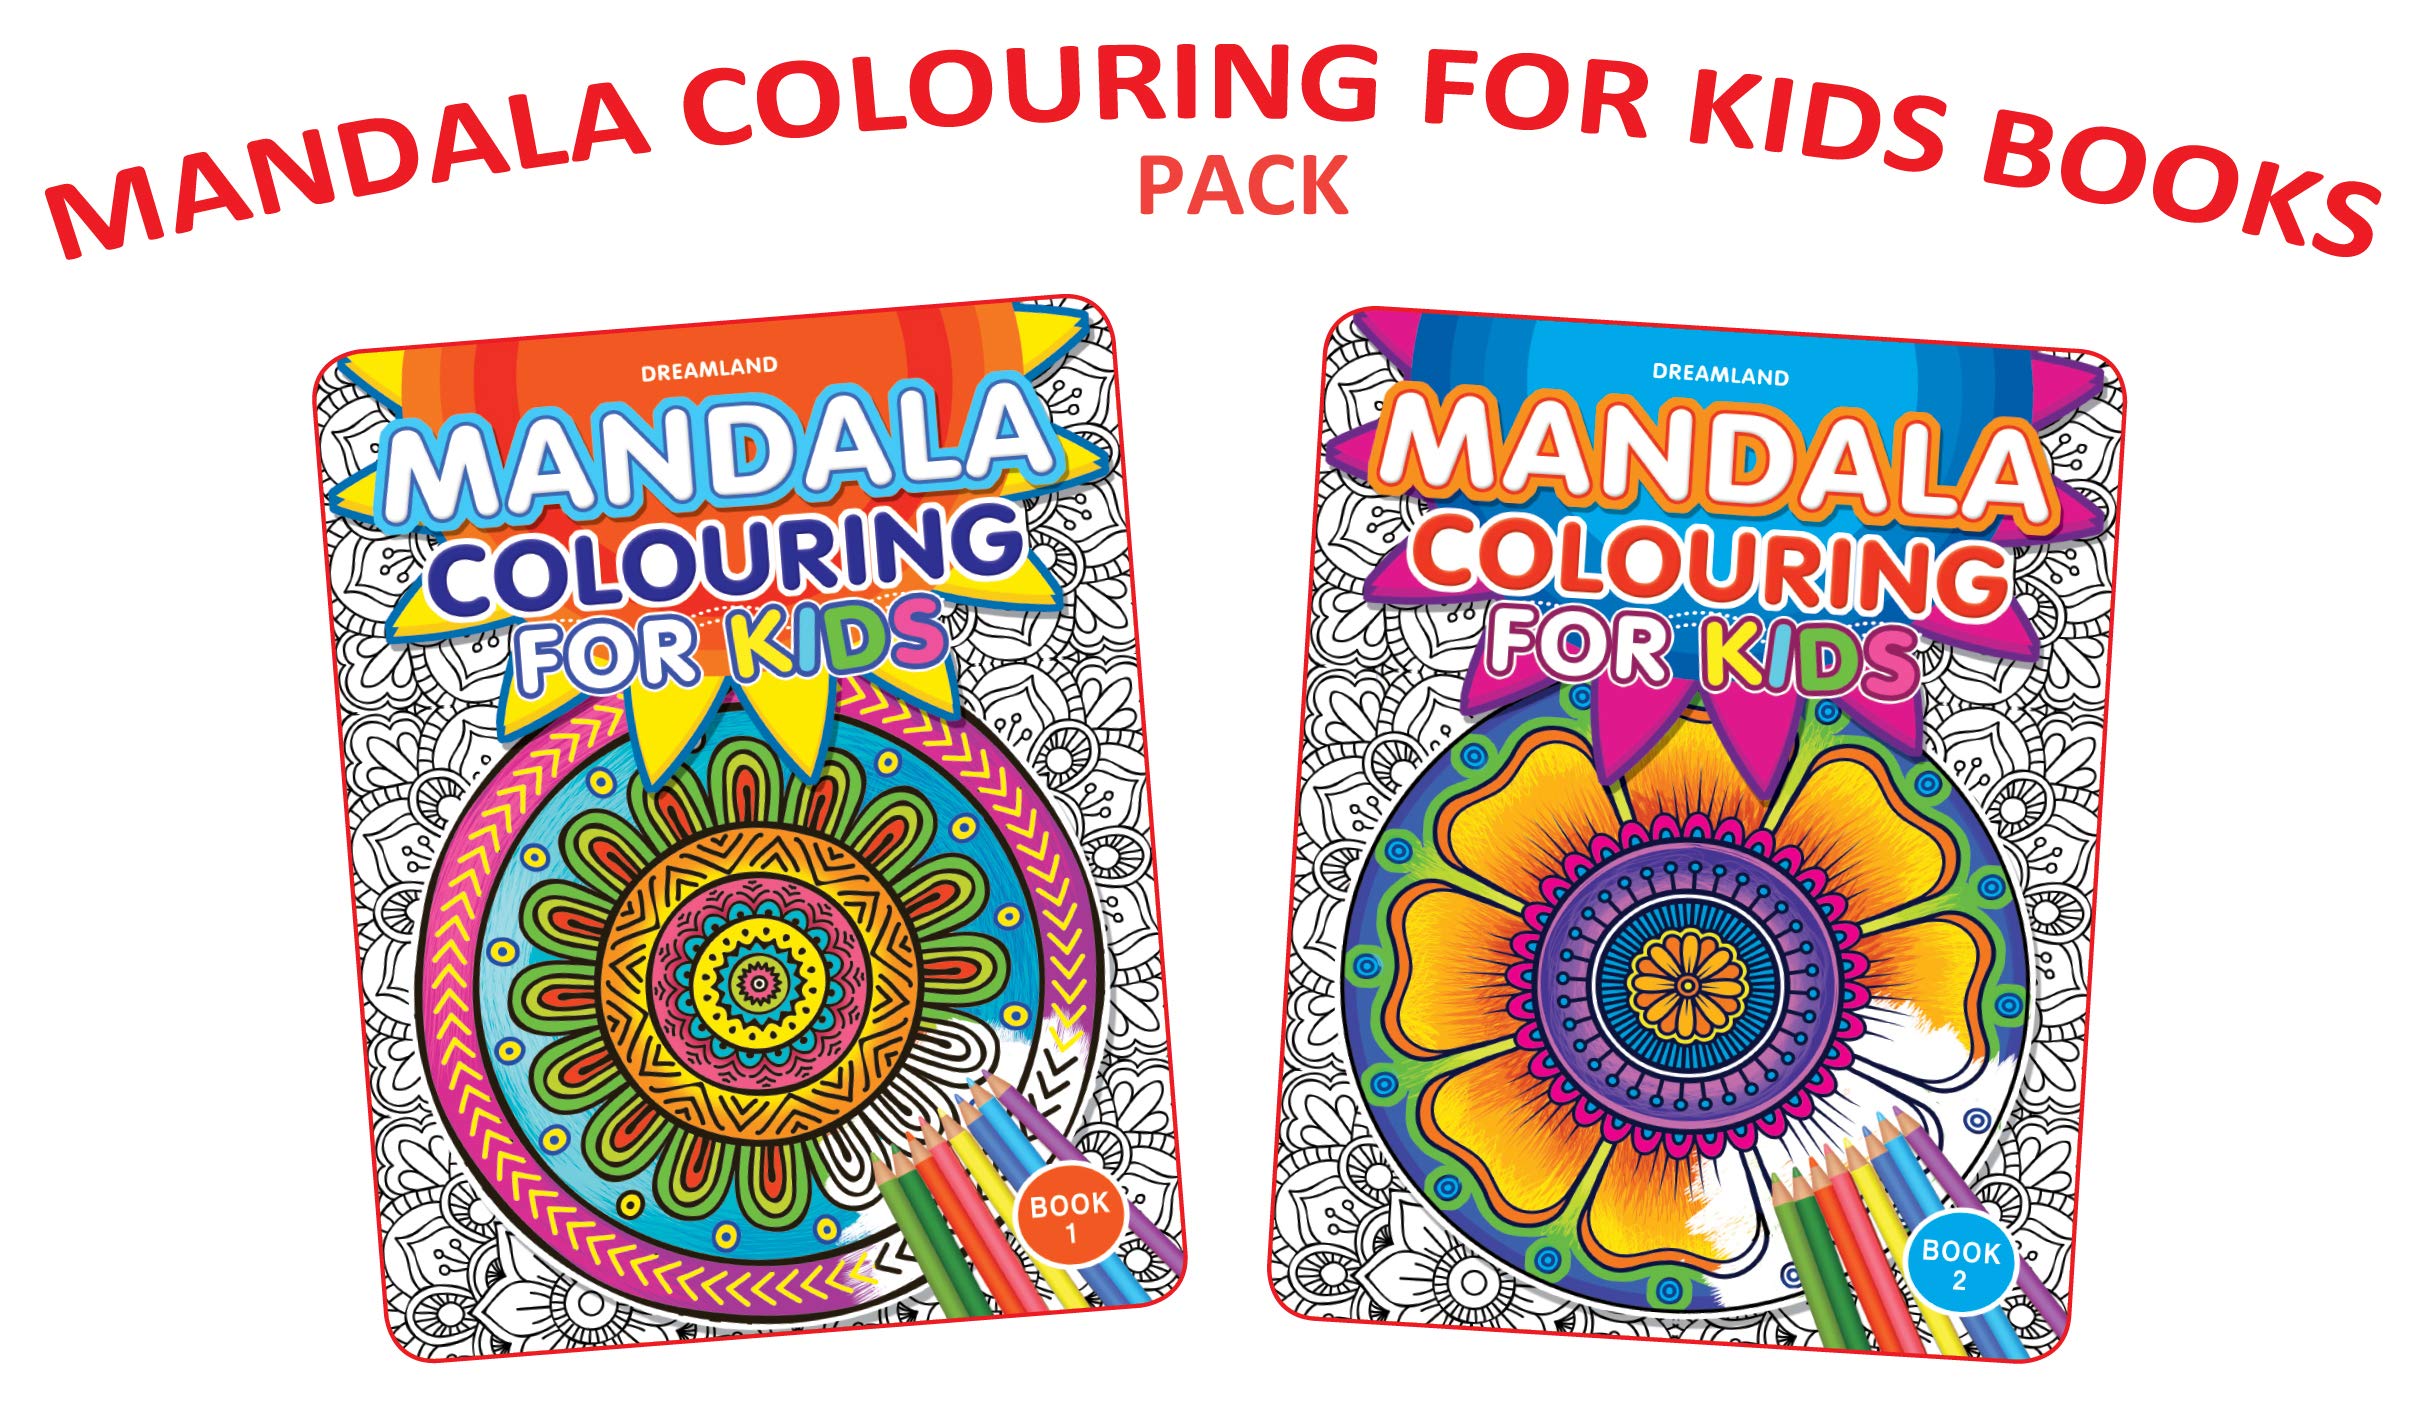 Mandala Colouring for Kids Pack - 2